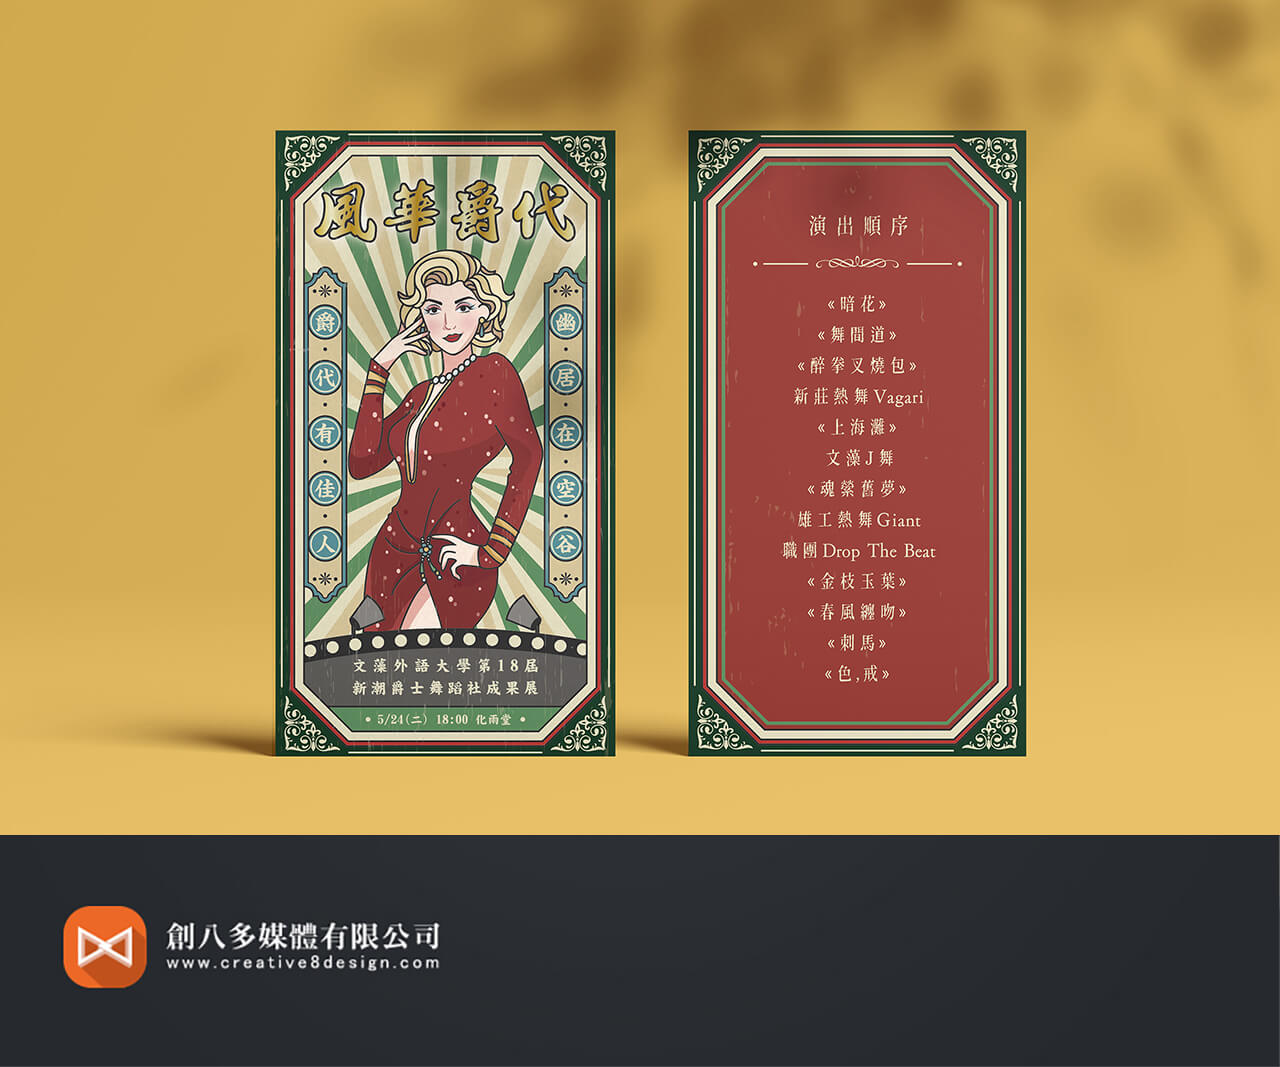 文藻外語大學-邀請卡設計的圖片